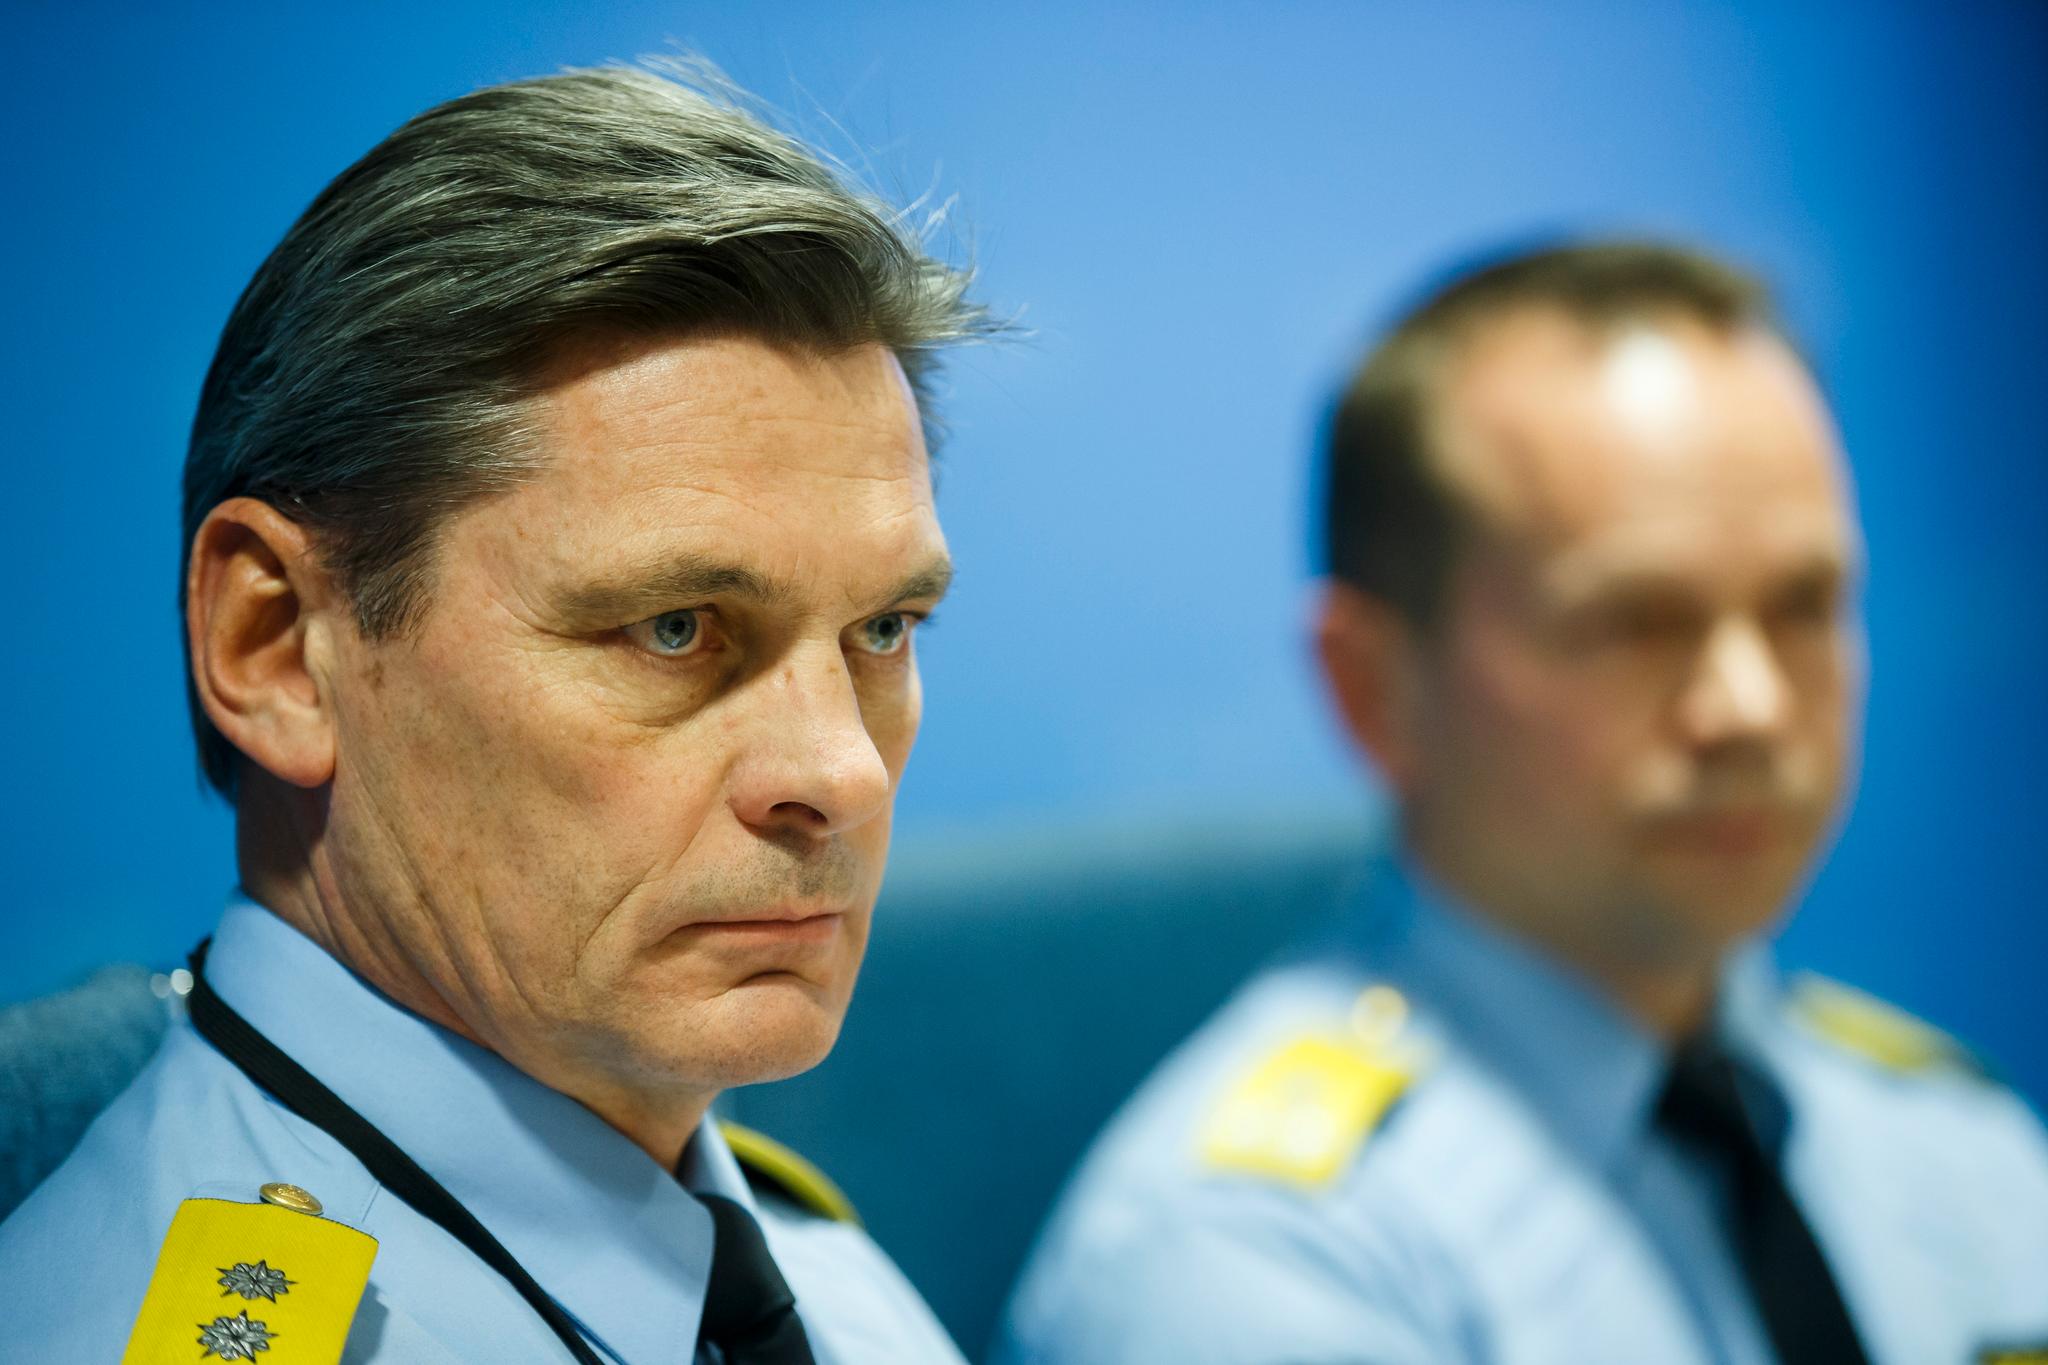  Beredskapsdirektør Knut Smedsrud i Politidirektoratet sier det er vanskelig å definere hva som er permanent bevæpning ifølge våpeninstruksen. Bildet er fra 2015.